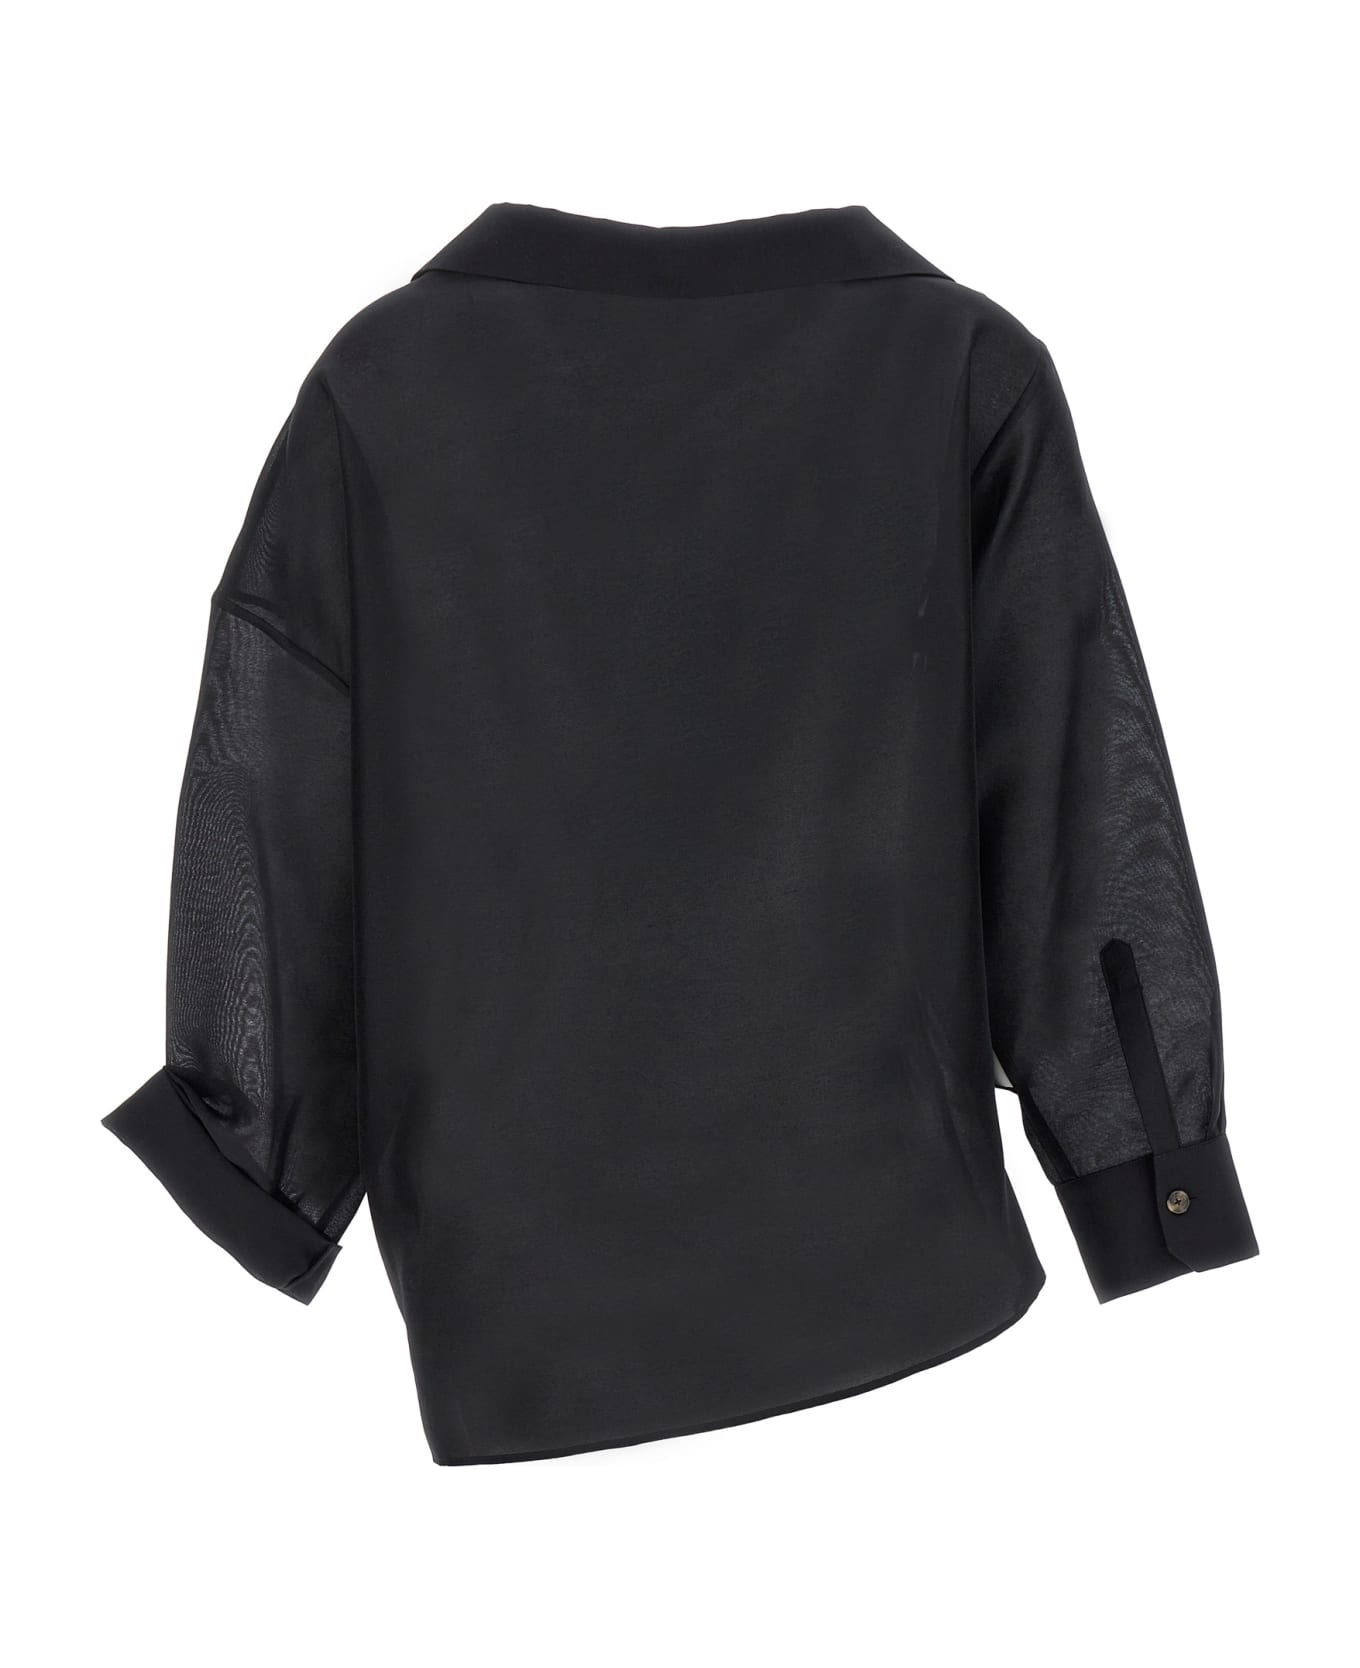 A.W.A.K.E. Mode Asymmetric Shirt - Black   シャツ